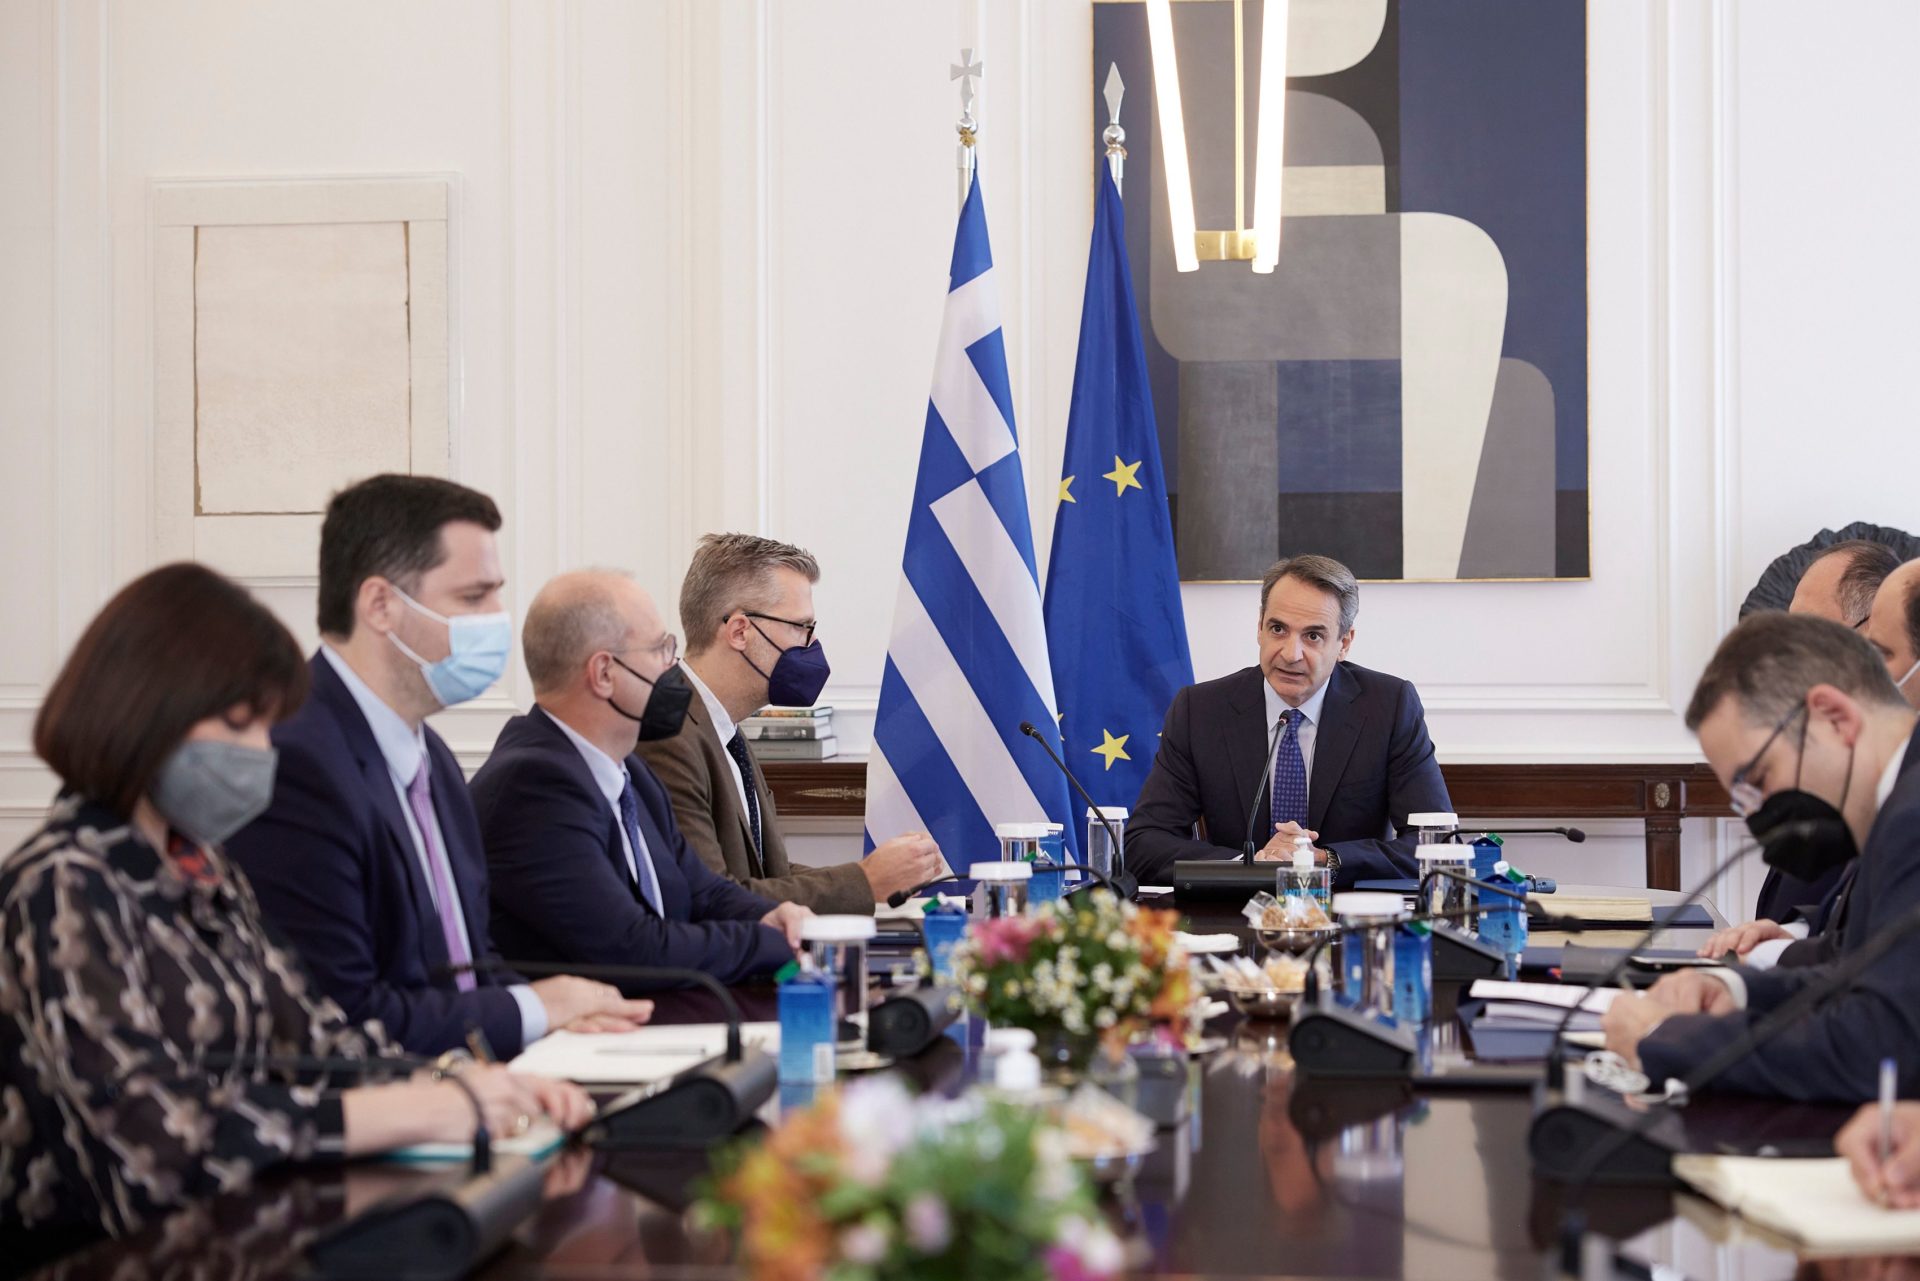 Griechenland: Impfpflicht für 60+ unter Androhung von monatlichen Geldbussen